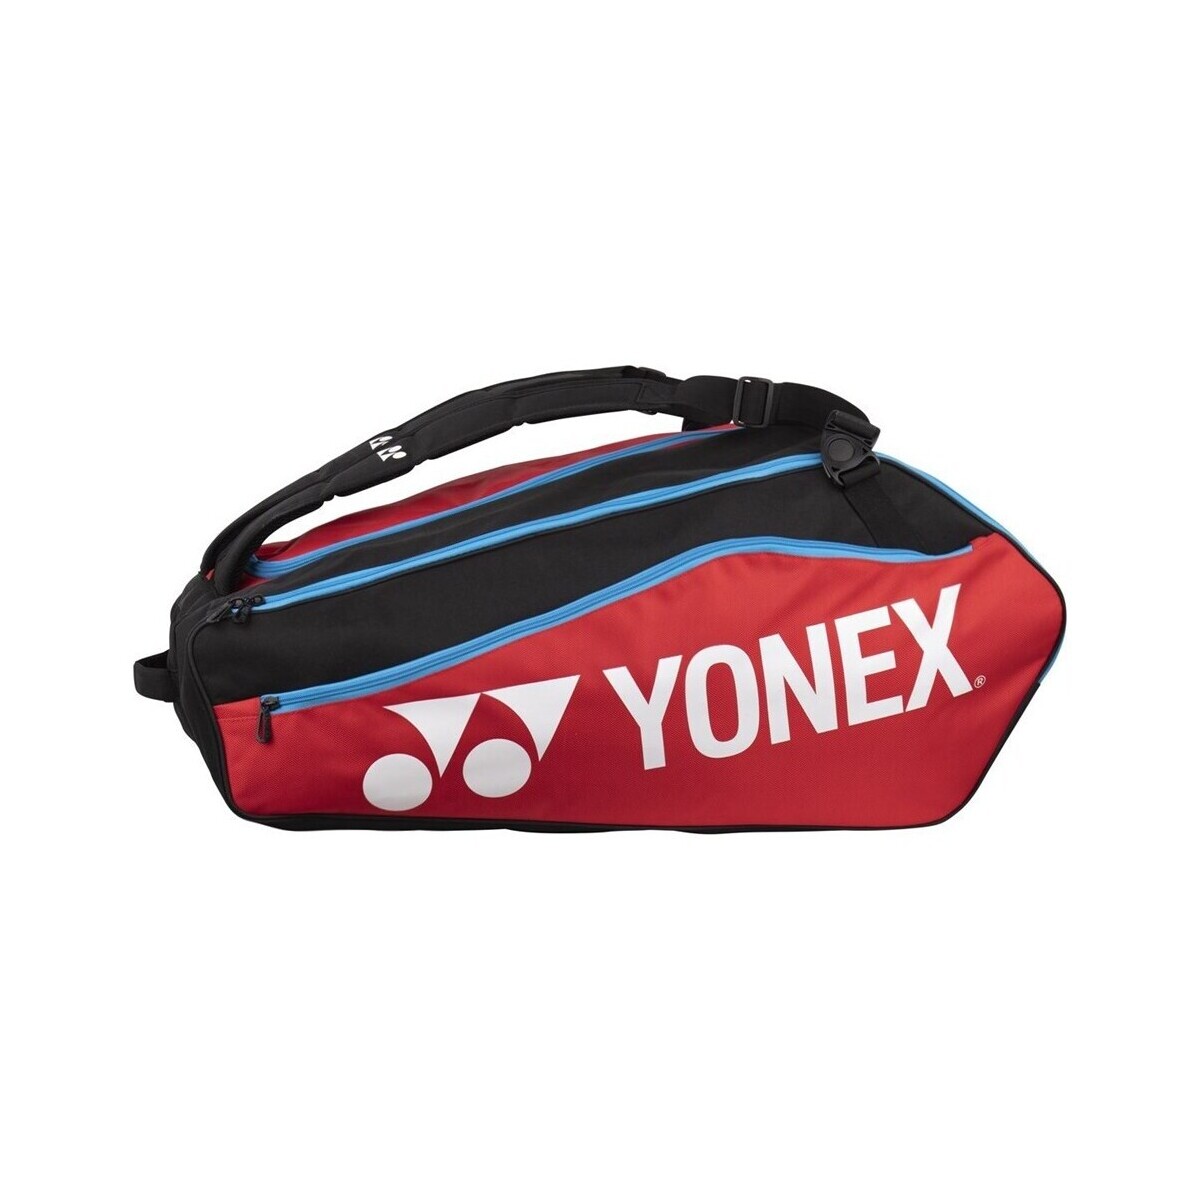 Bags Bag Yonex Thermobag 1222 Club Racket Red, Black